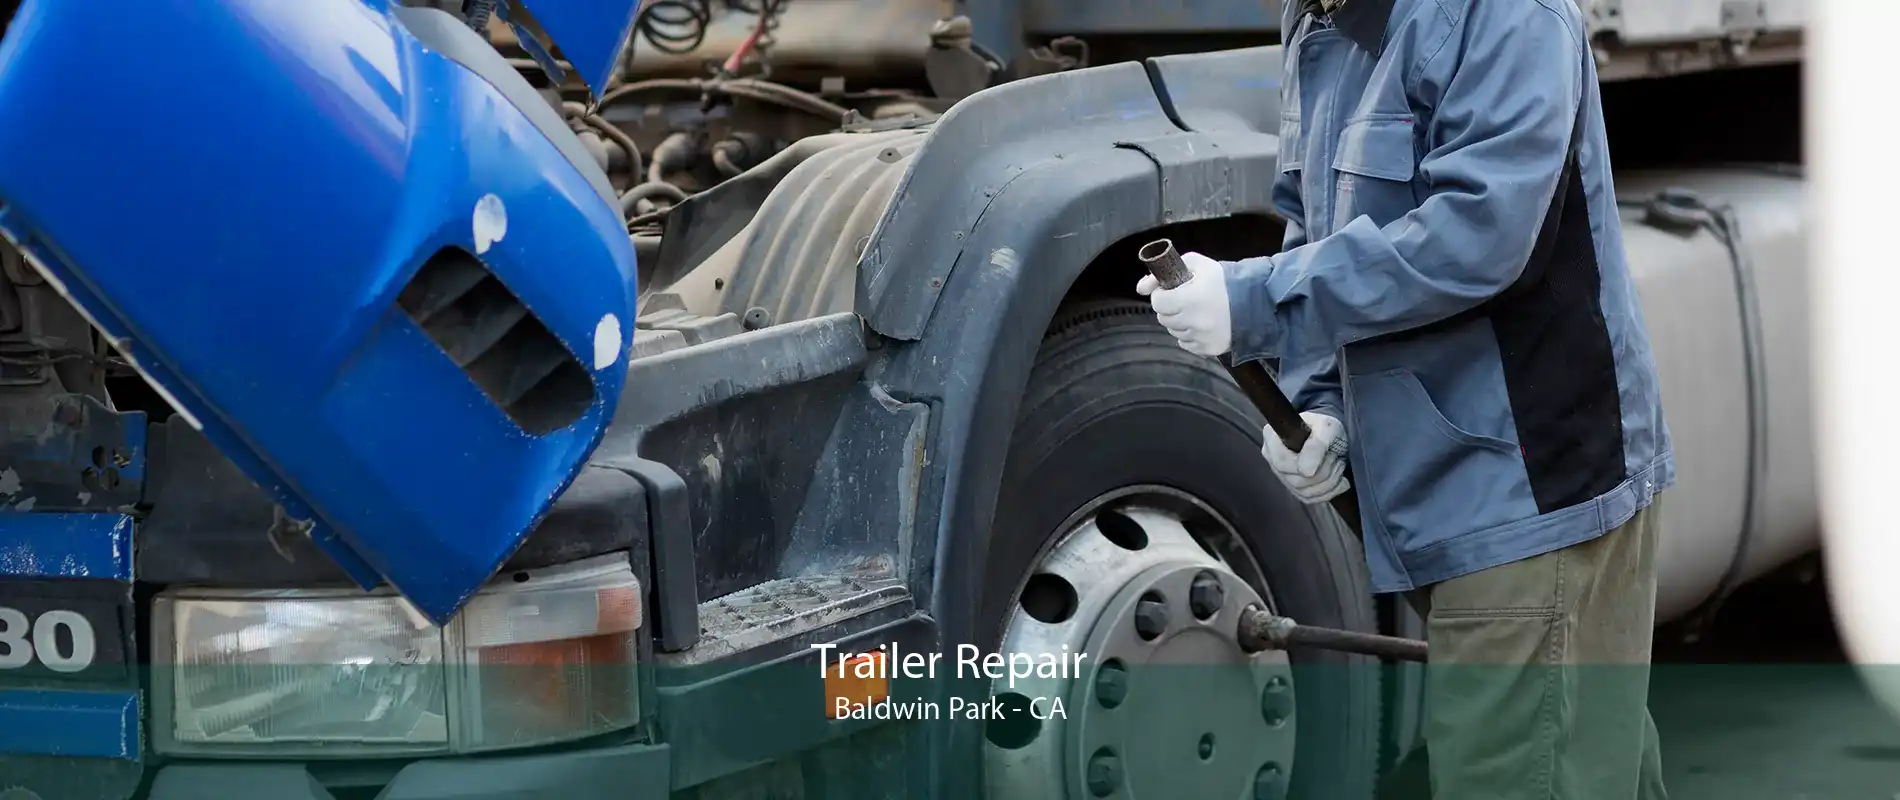 Trailer Repair Baldwin Park - CA